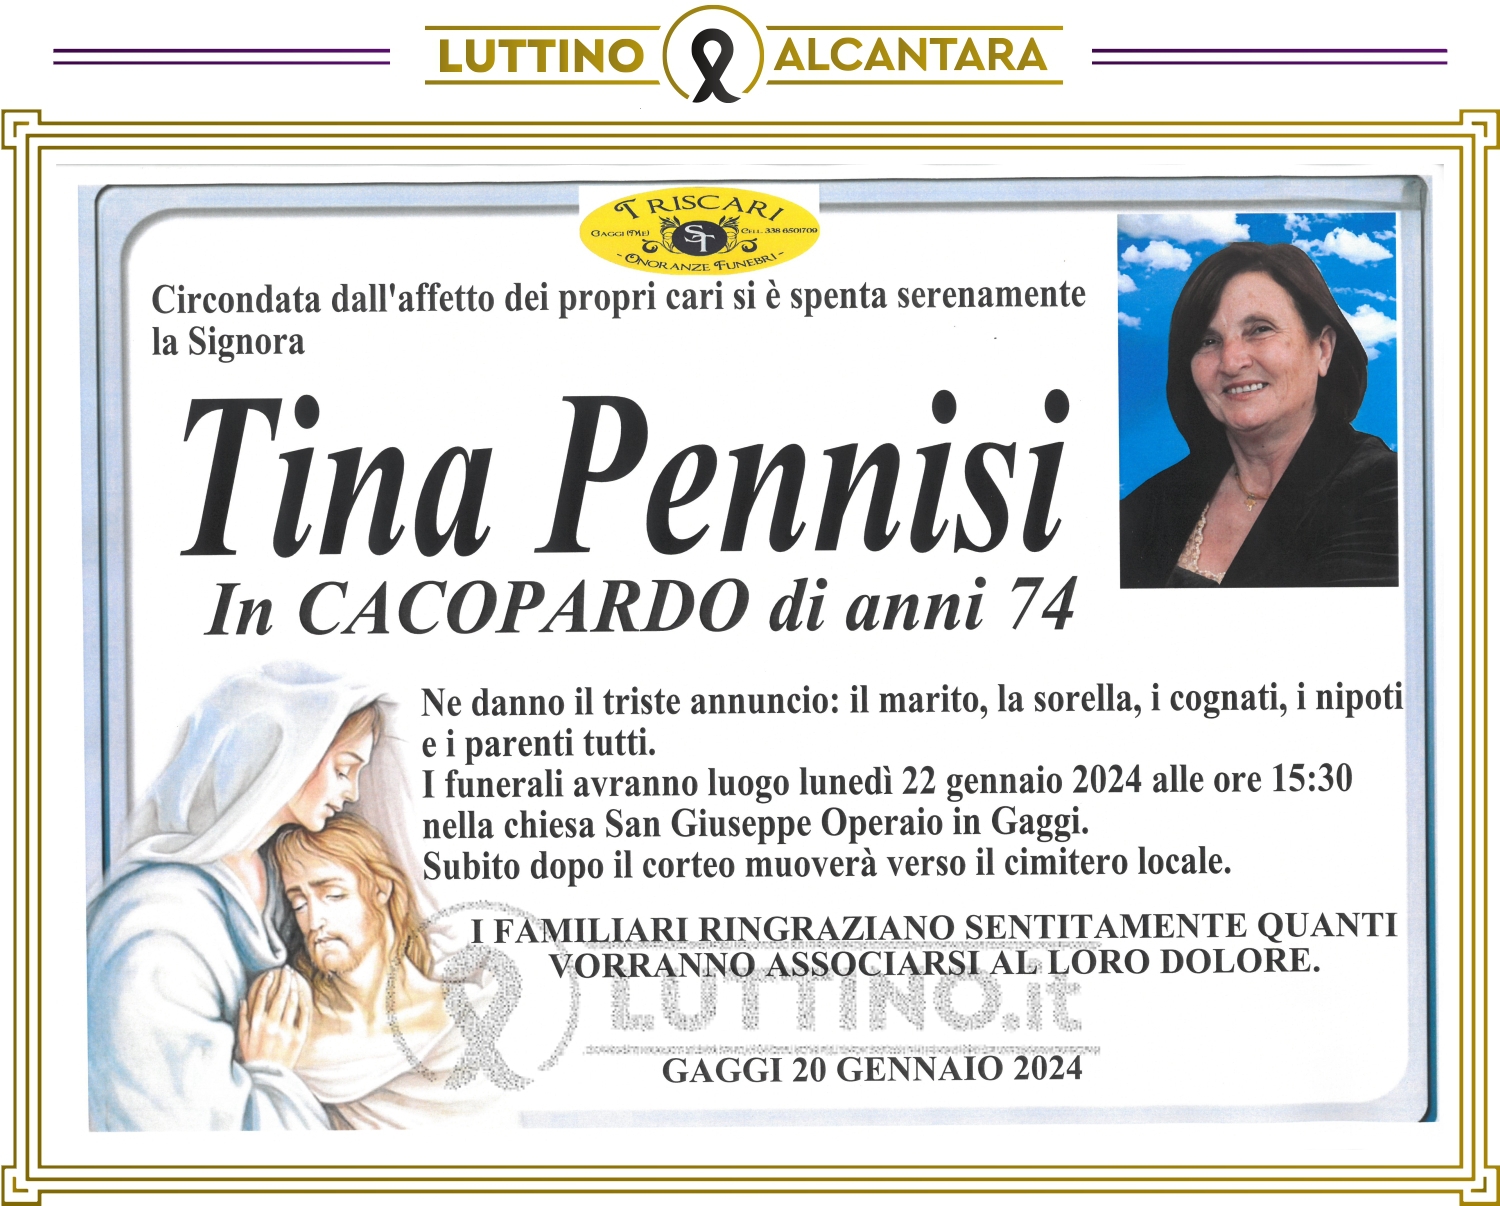 Tina Pennisi